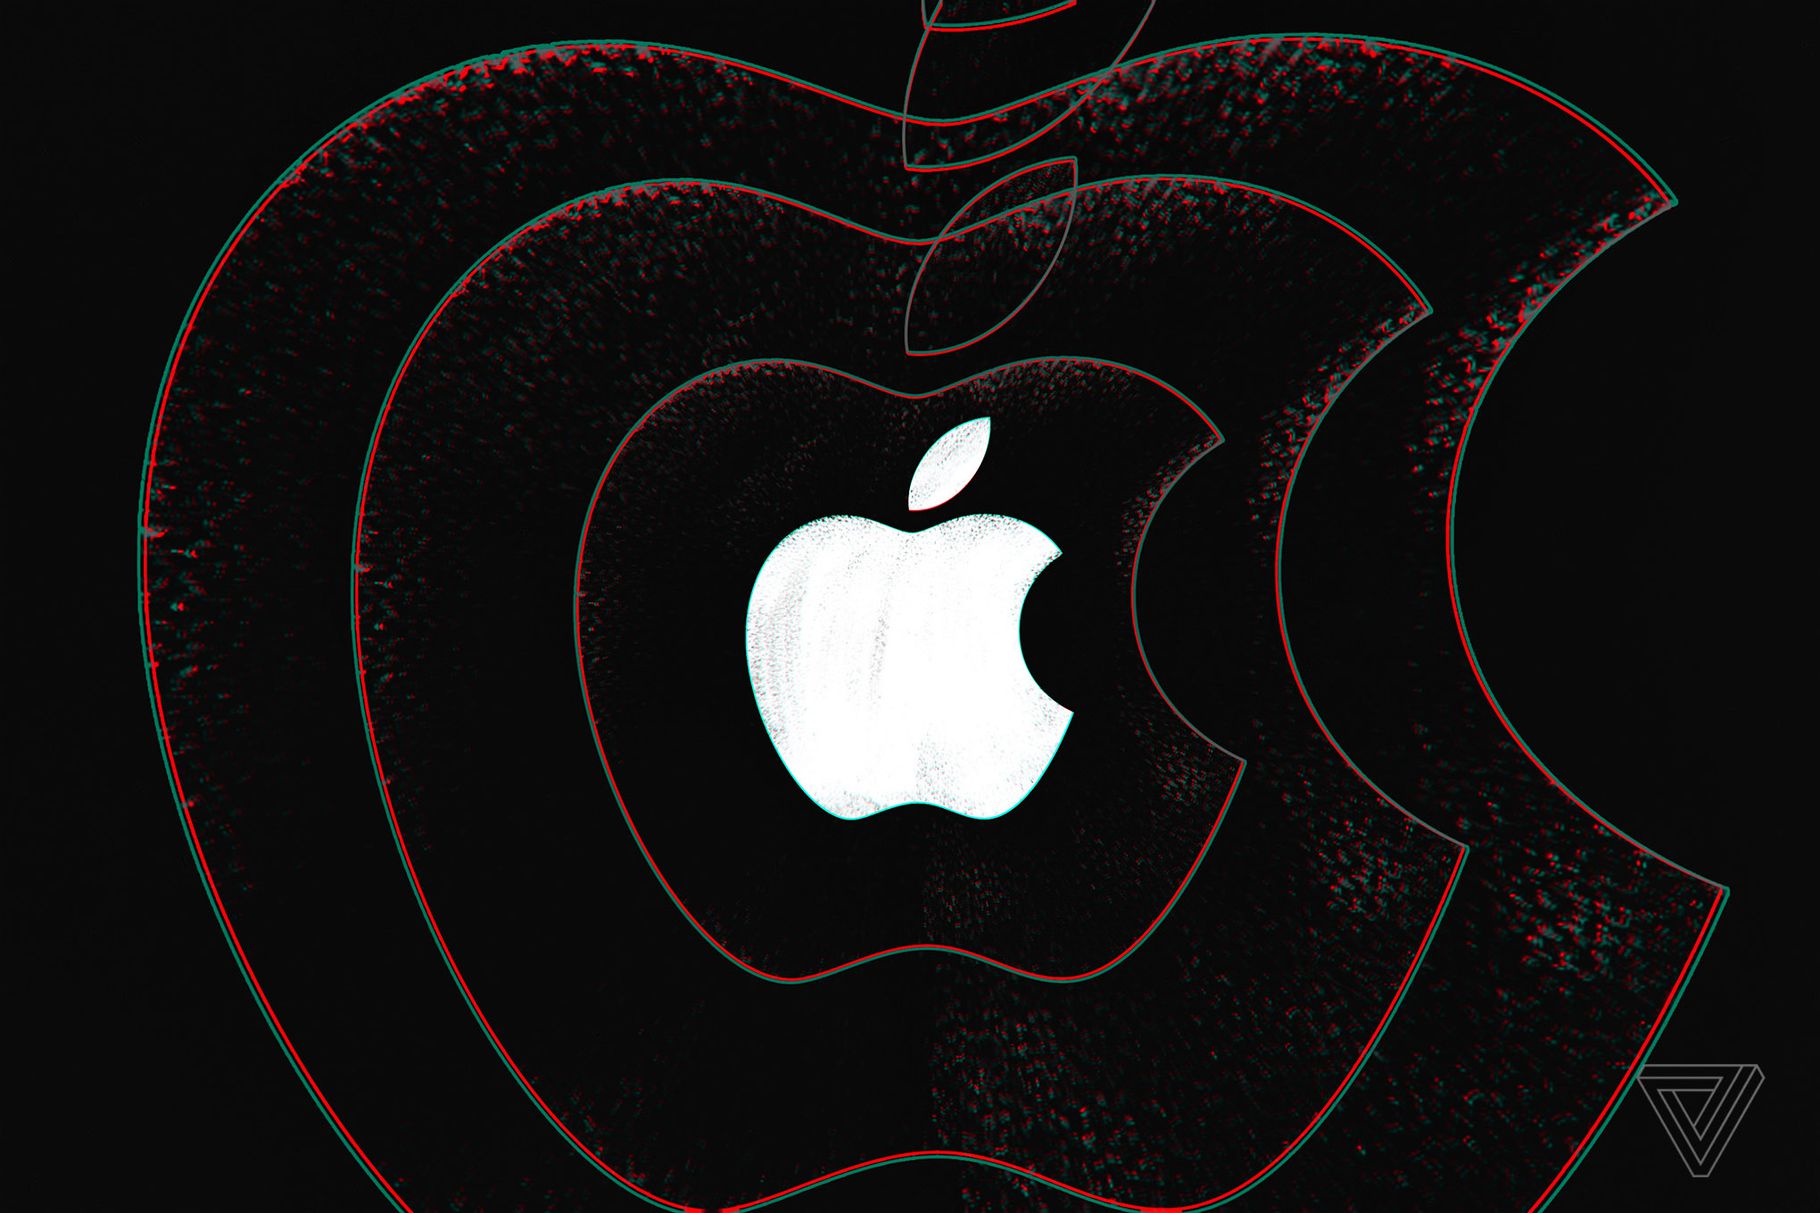 Apple เตรียมเปิดตัว iPhone สามรุ่น, iPad Pro 11 นิ้ว, Mac mini รุ่นใหม่ และ Apple Watch หน้าจอใหญ่ขึ้น!